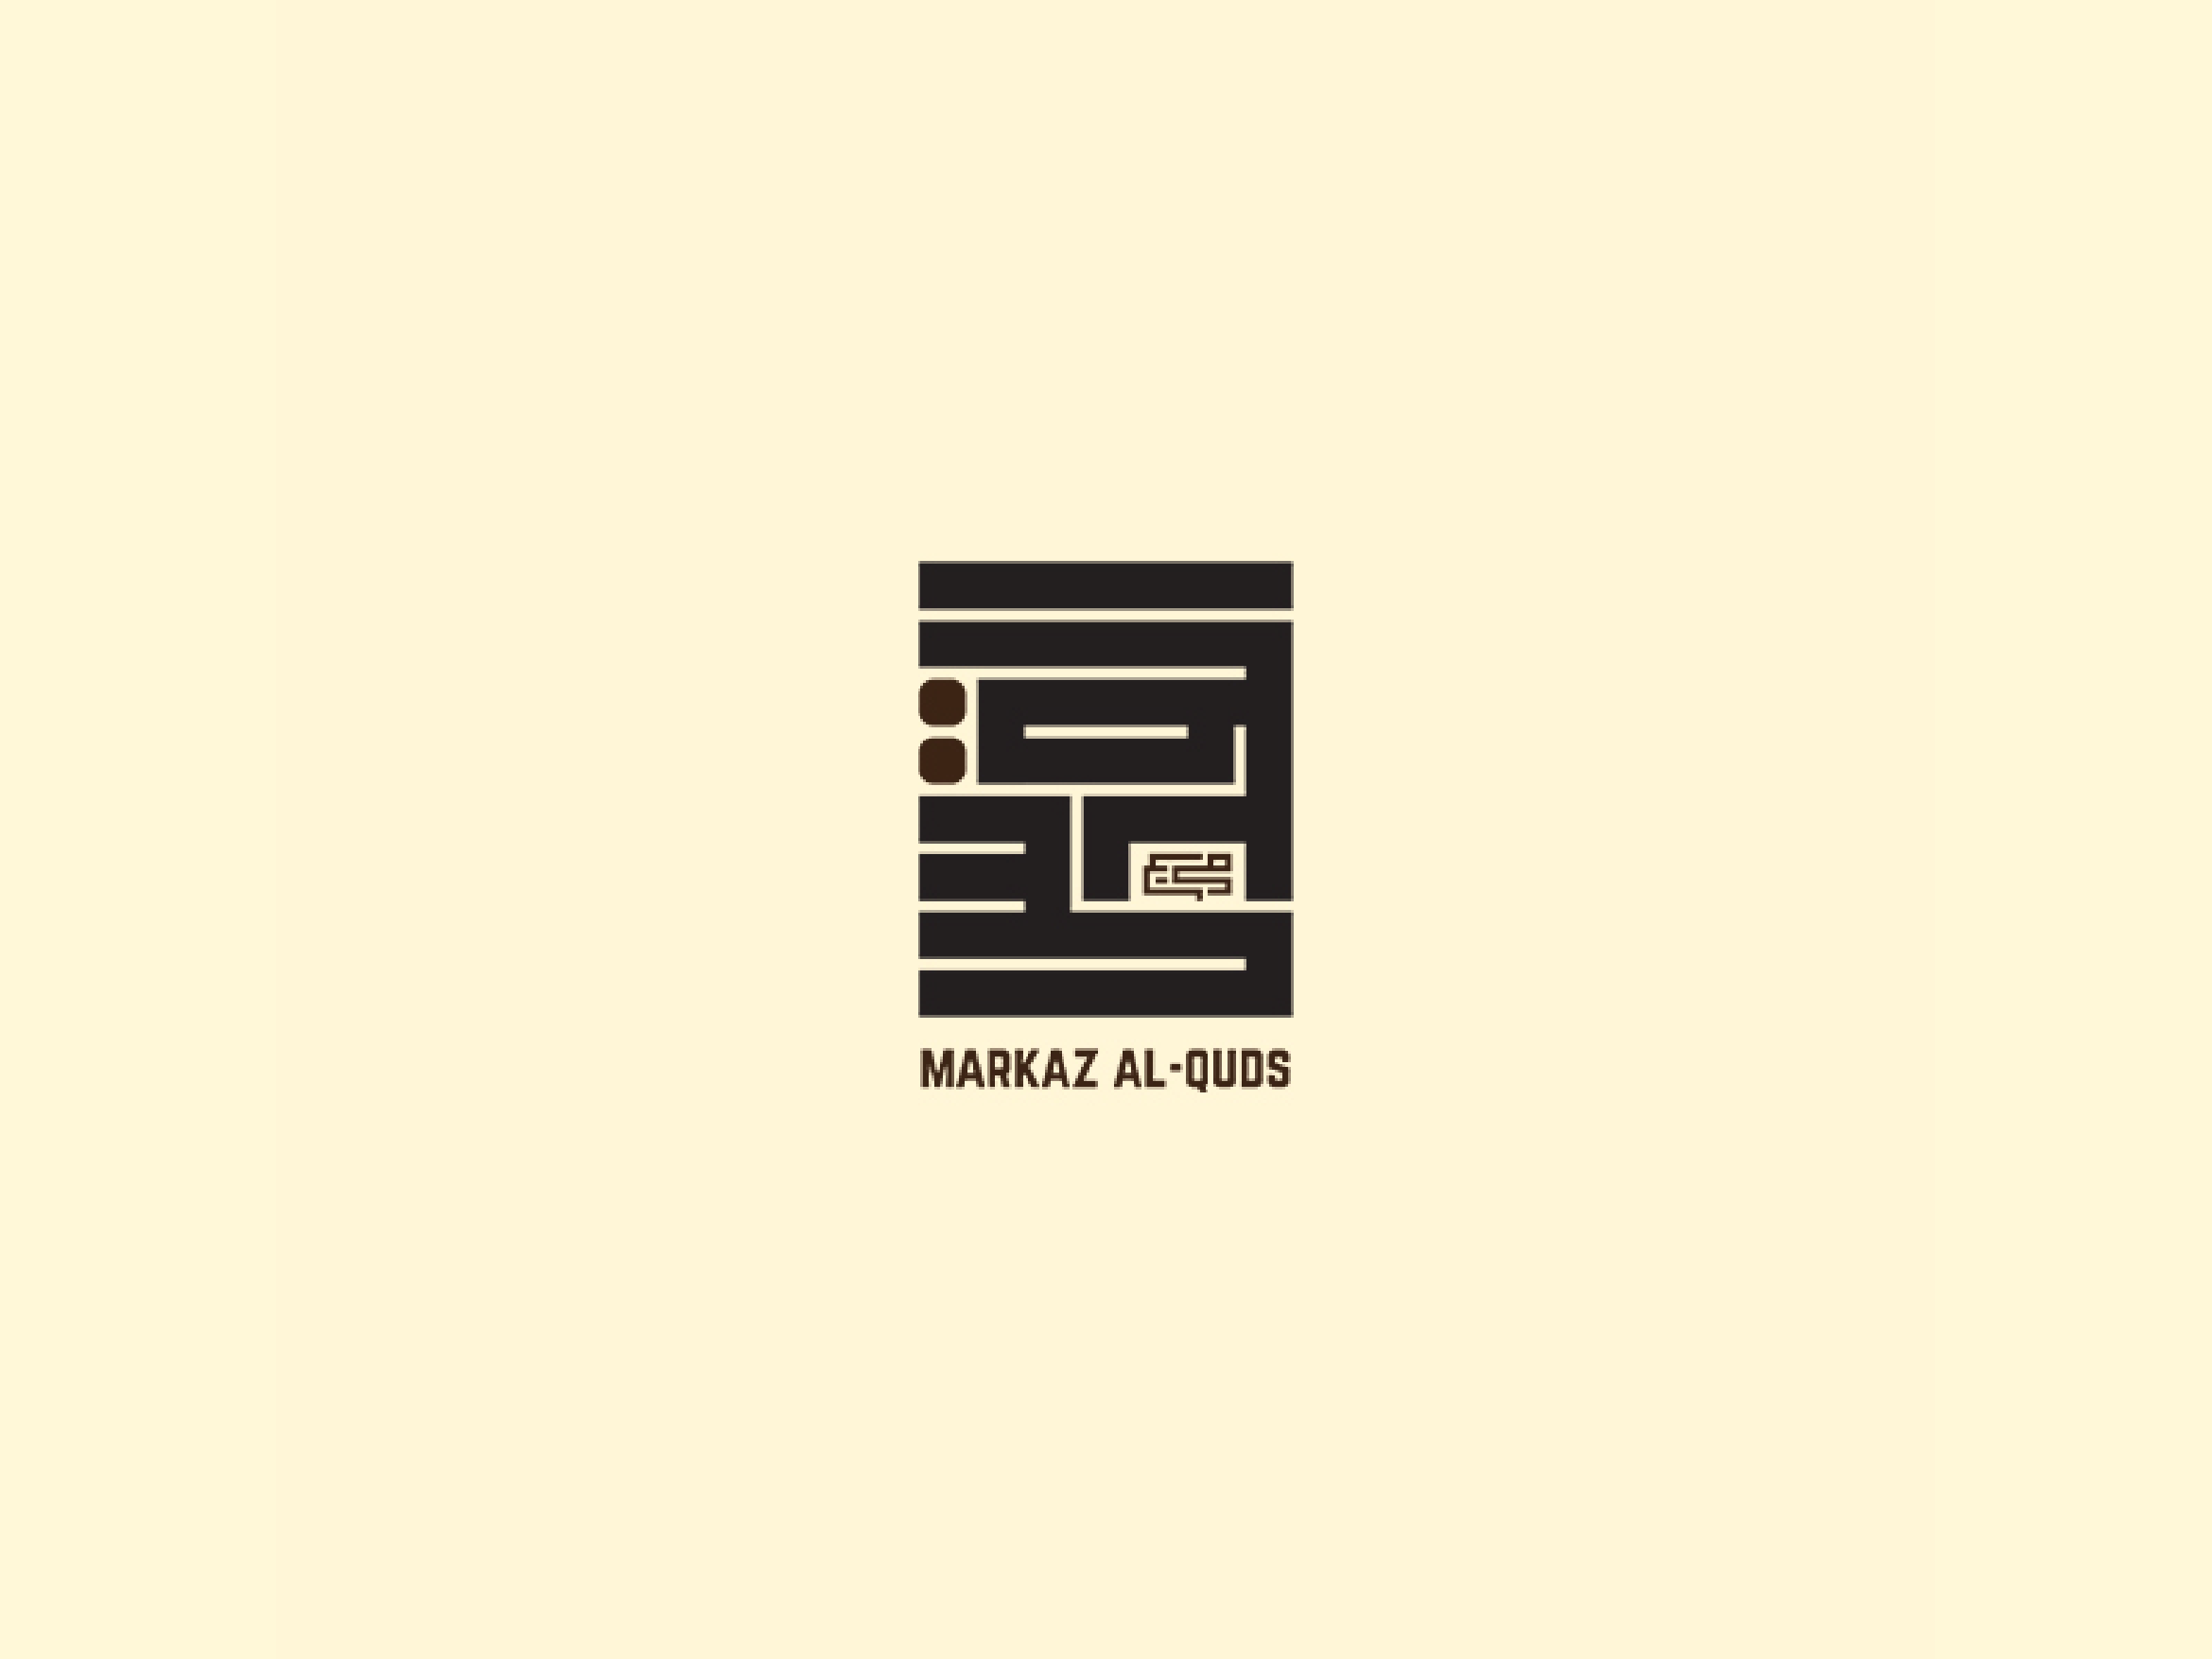 Markaz Logo PNG Vectors Free Download